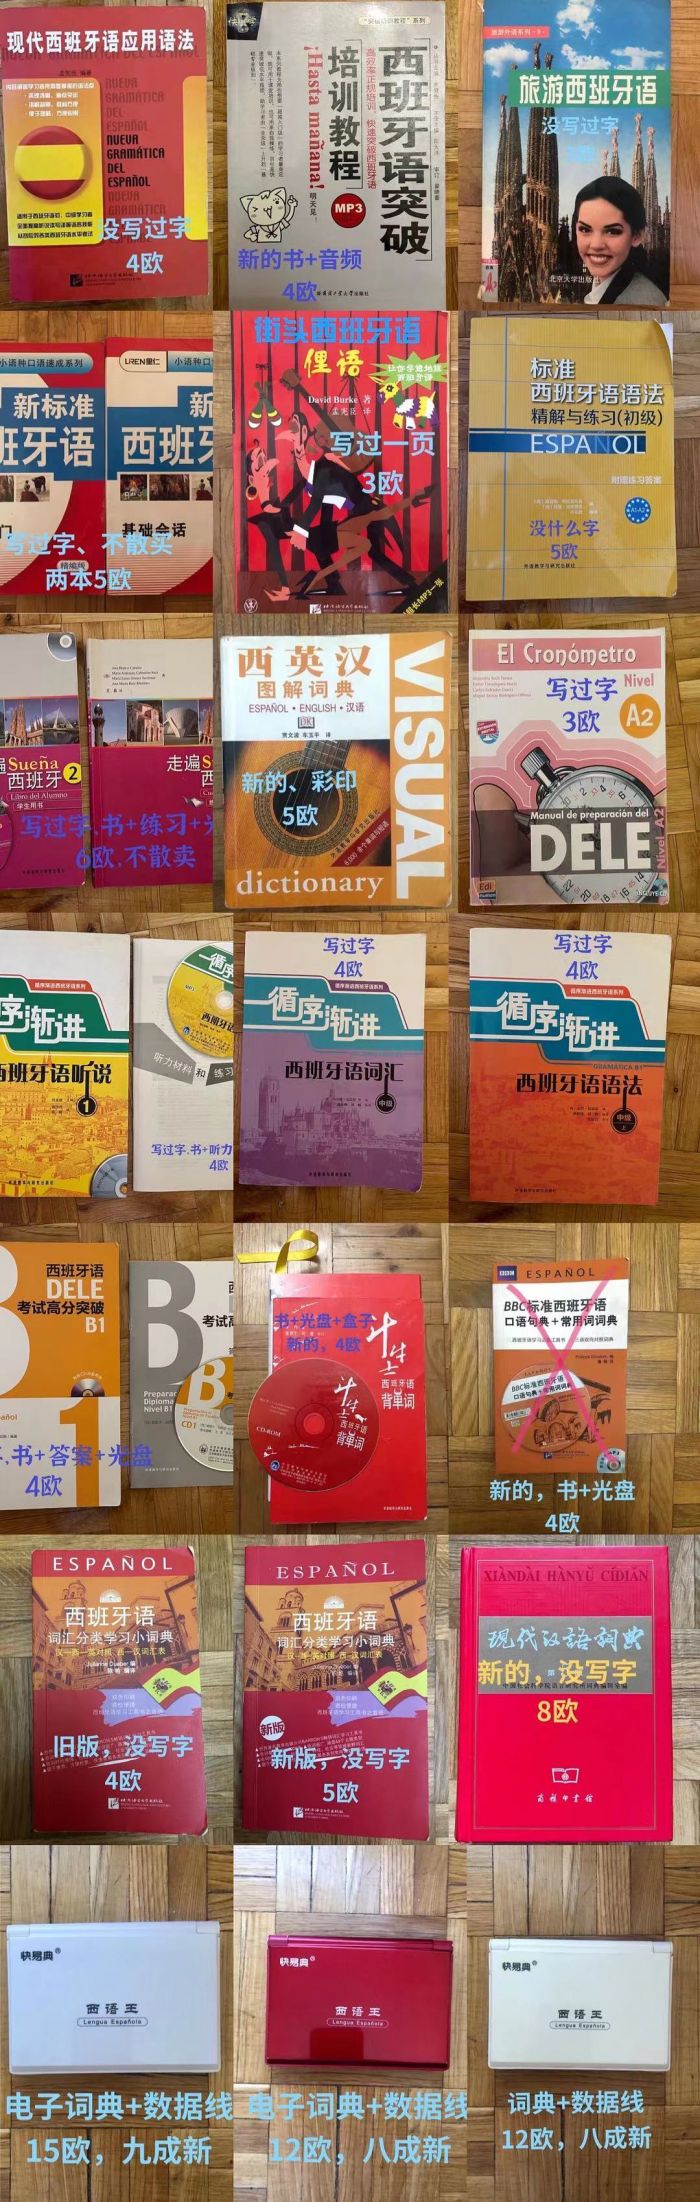 西语单词书、语法书、电子词典